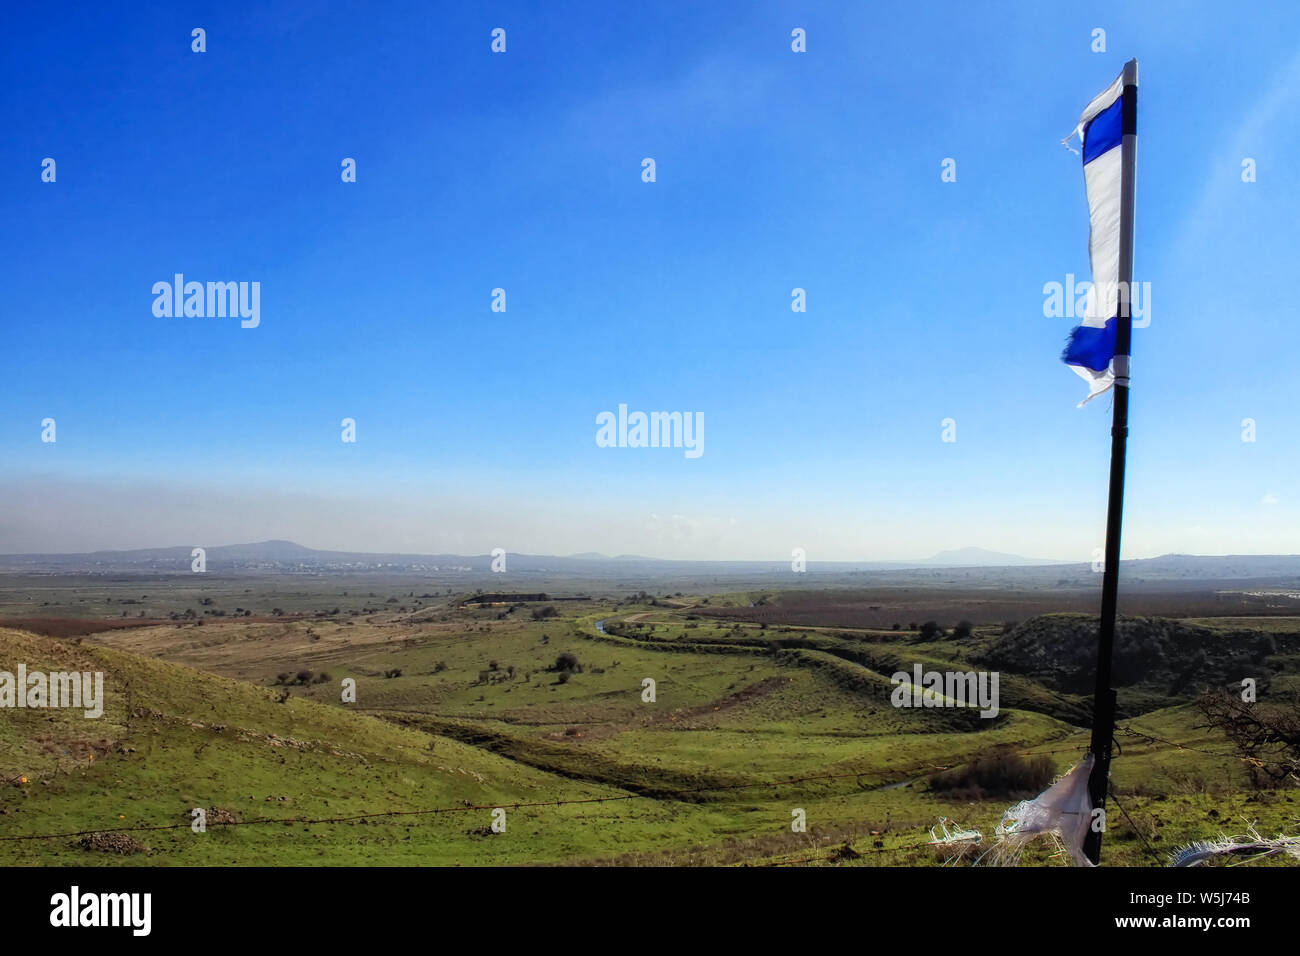 Un vento soffiato parziale bandiera Israeliana alette nella brezza che si affaccia sulla vasta valle di lacrime delle alture del Golan. Foto Stock